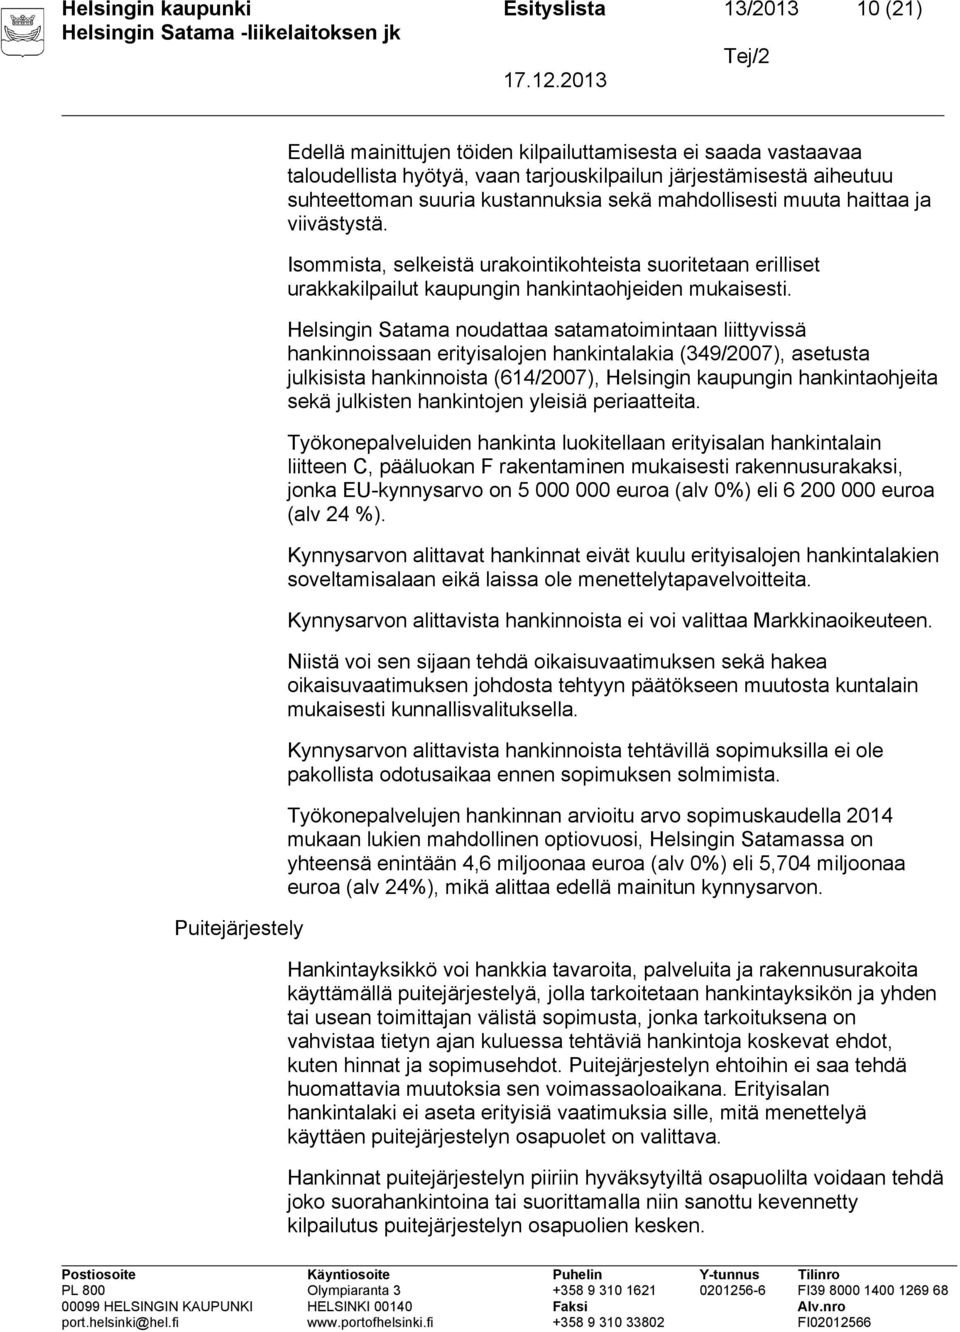 Helsingin Satama noudattaa satamatoimintaan liittyvissä hankinnoissaan erityisalojen hankintalakia (349/2007), asetusta julkisista hankinnoista (614/2007), Helsingin kaupungin hankintaohjeita sekä